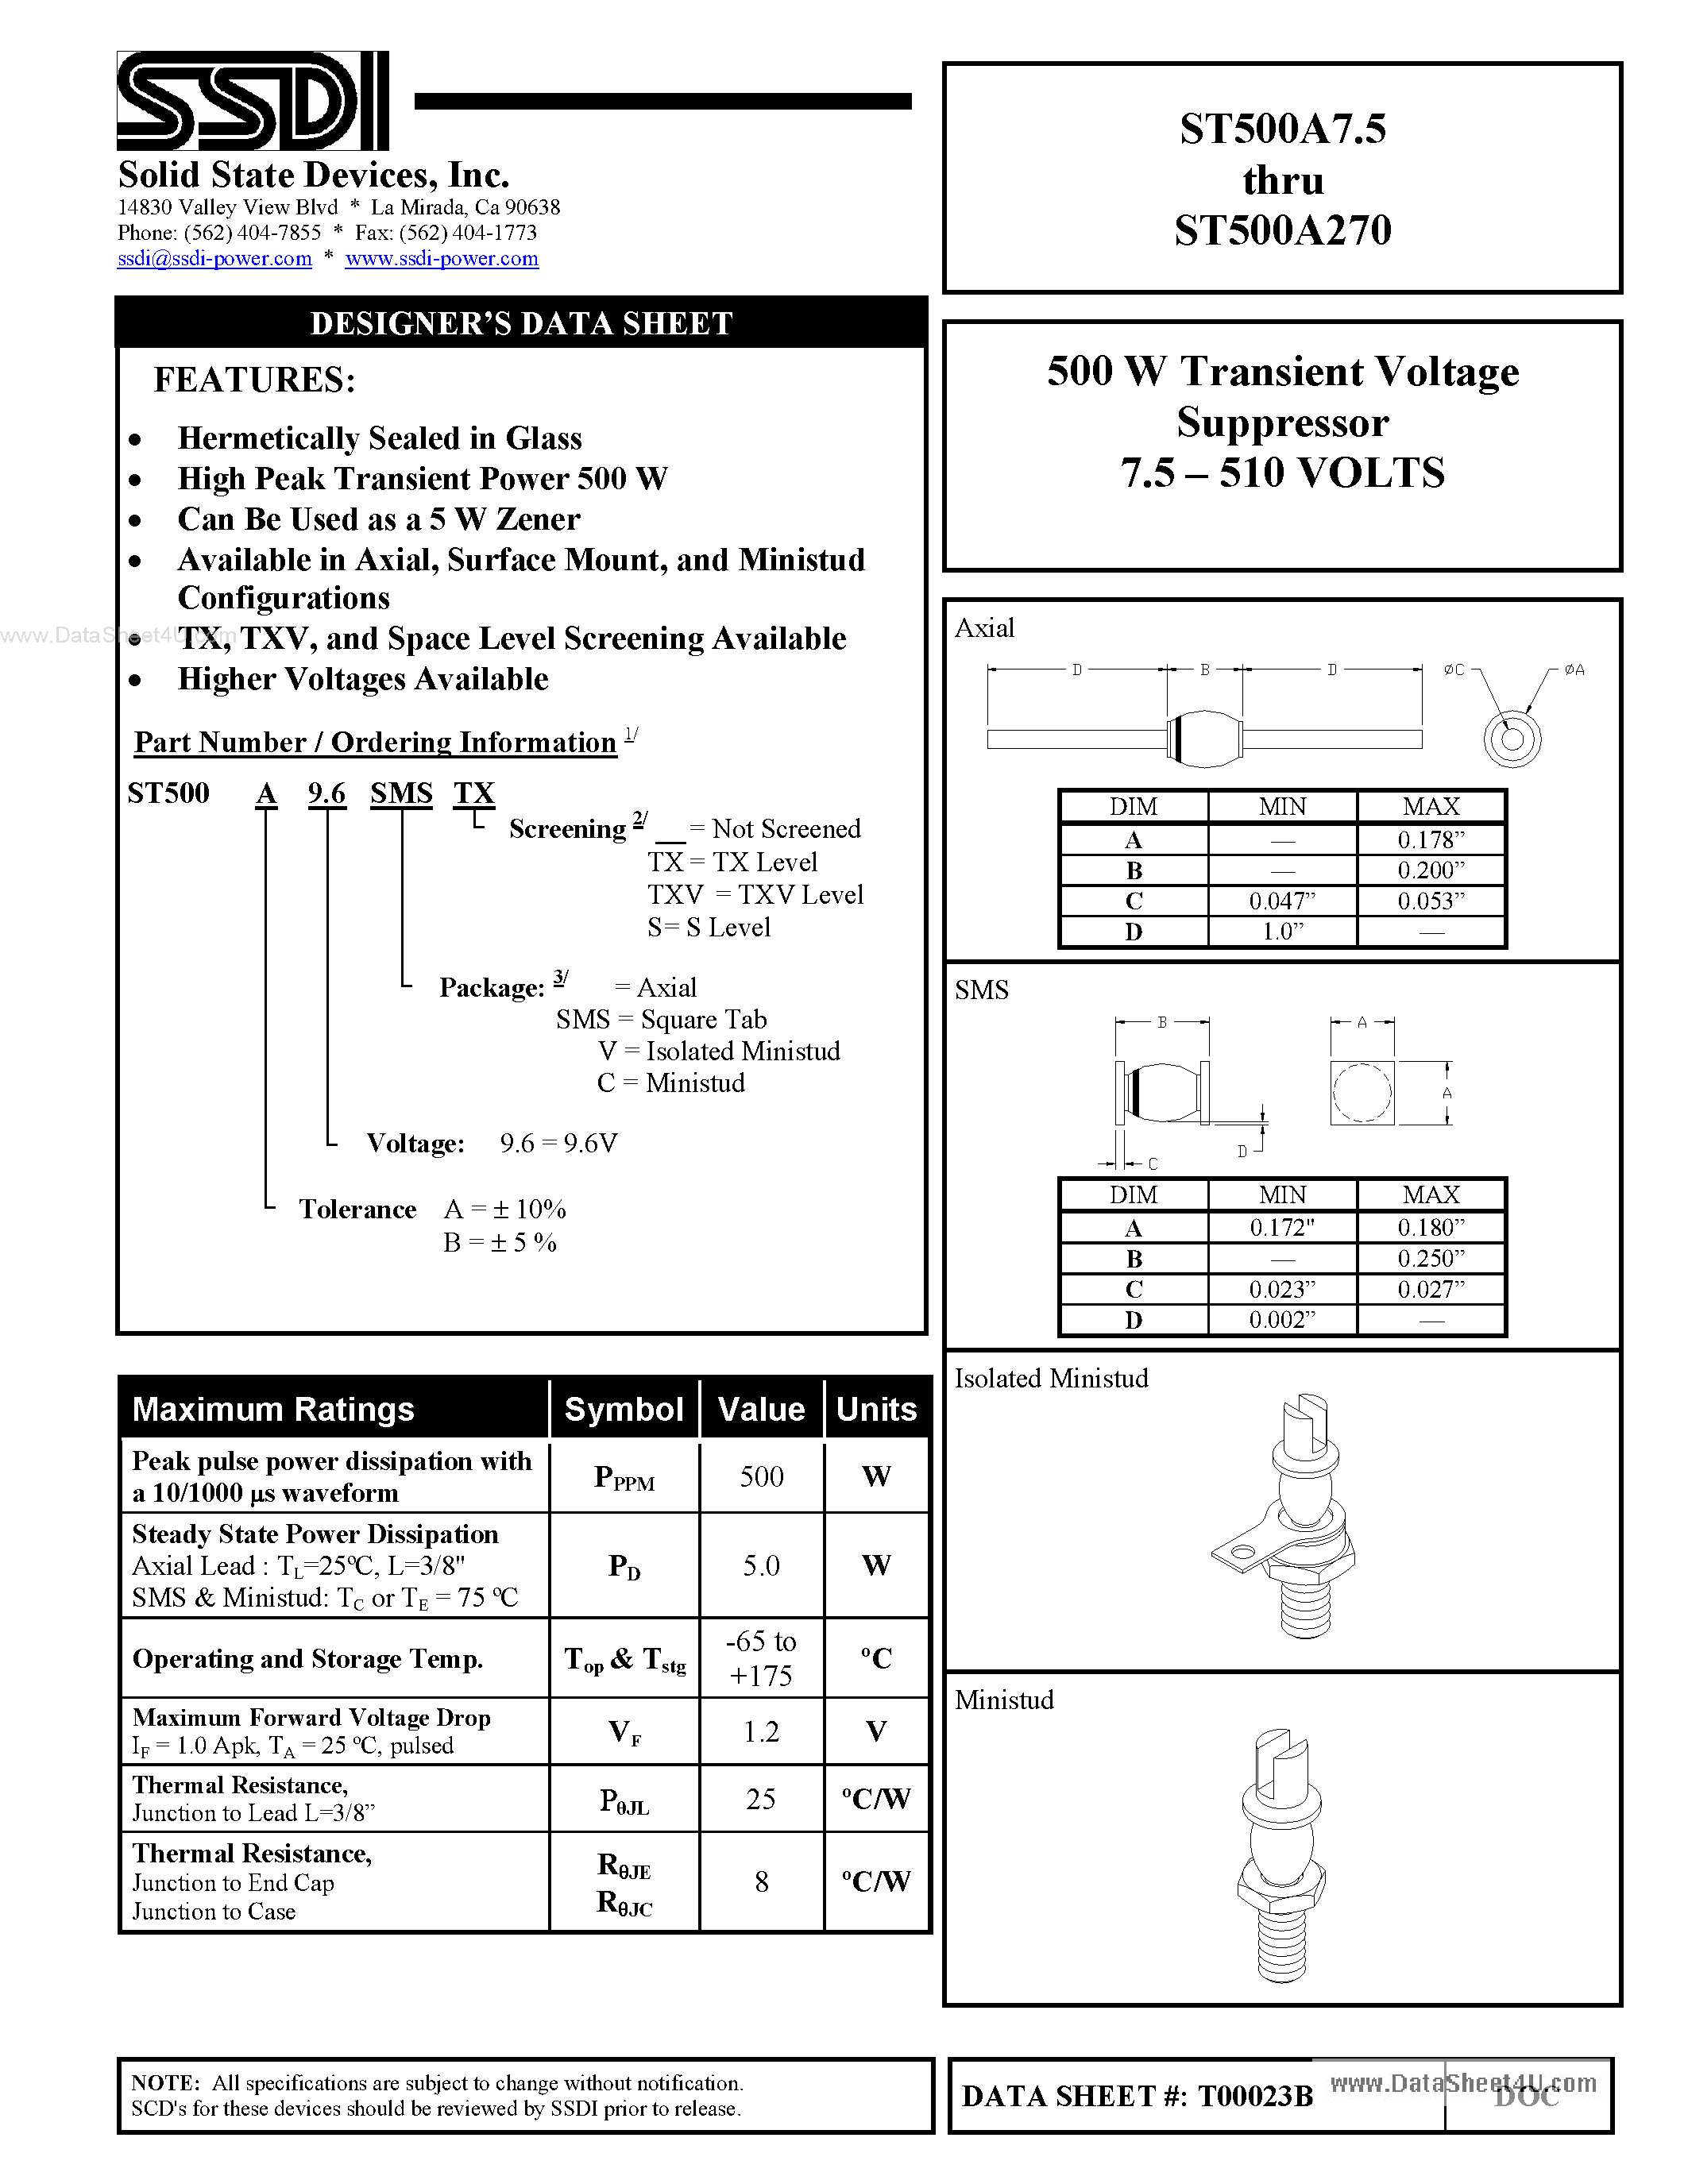 Datasheet ST500A270 - (ST500Axxx) 500 W Transient Voltage Suppressor page 1